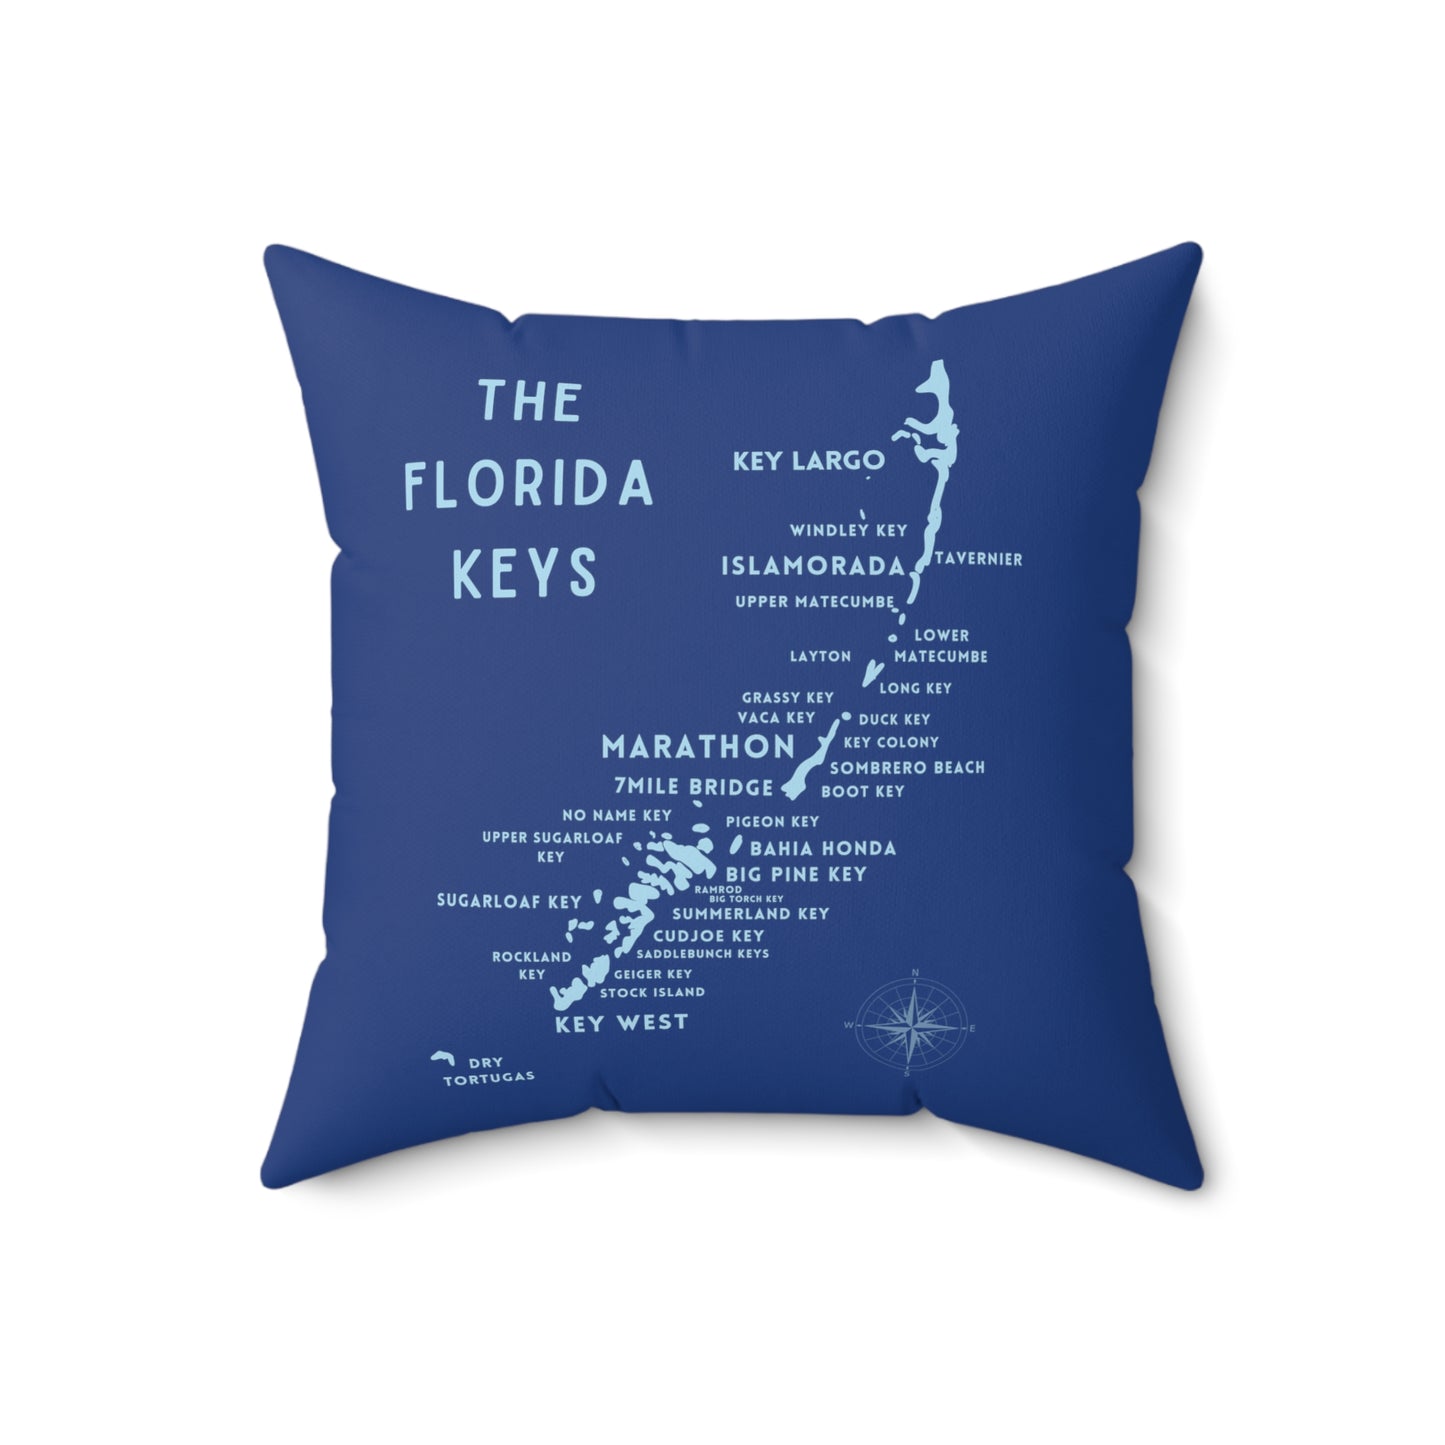 Florida Keys Map Gift - throw pillow - four sizes